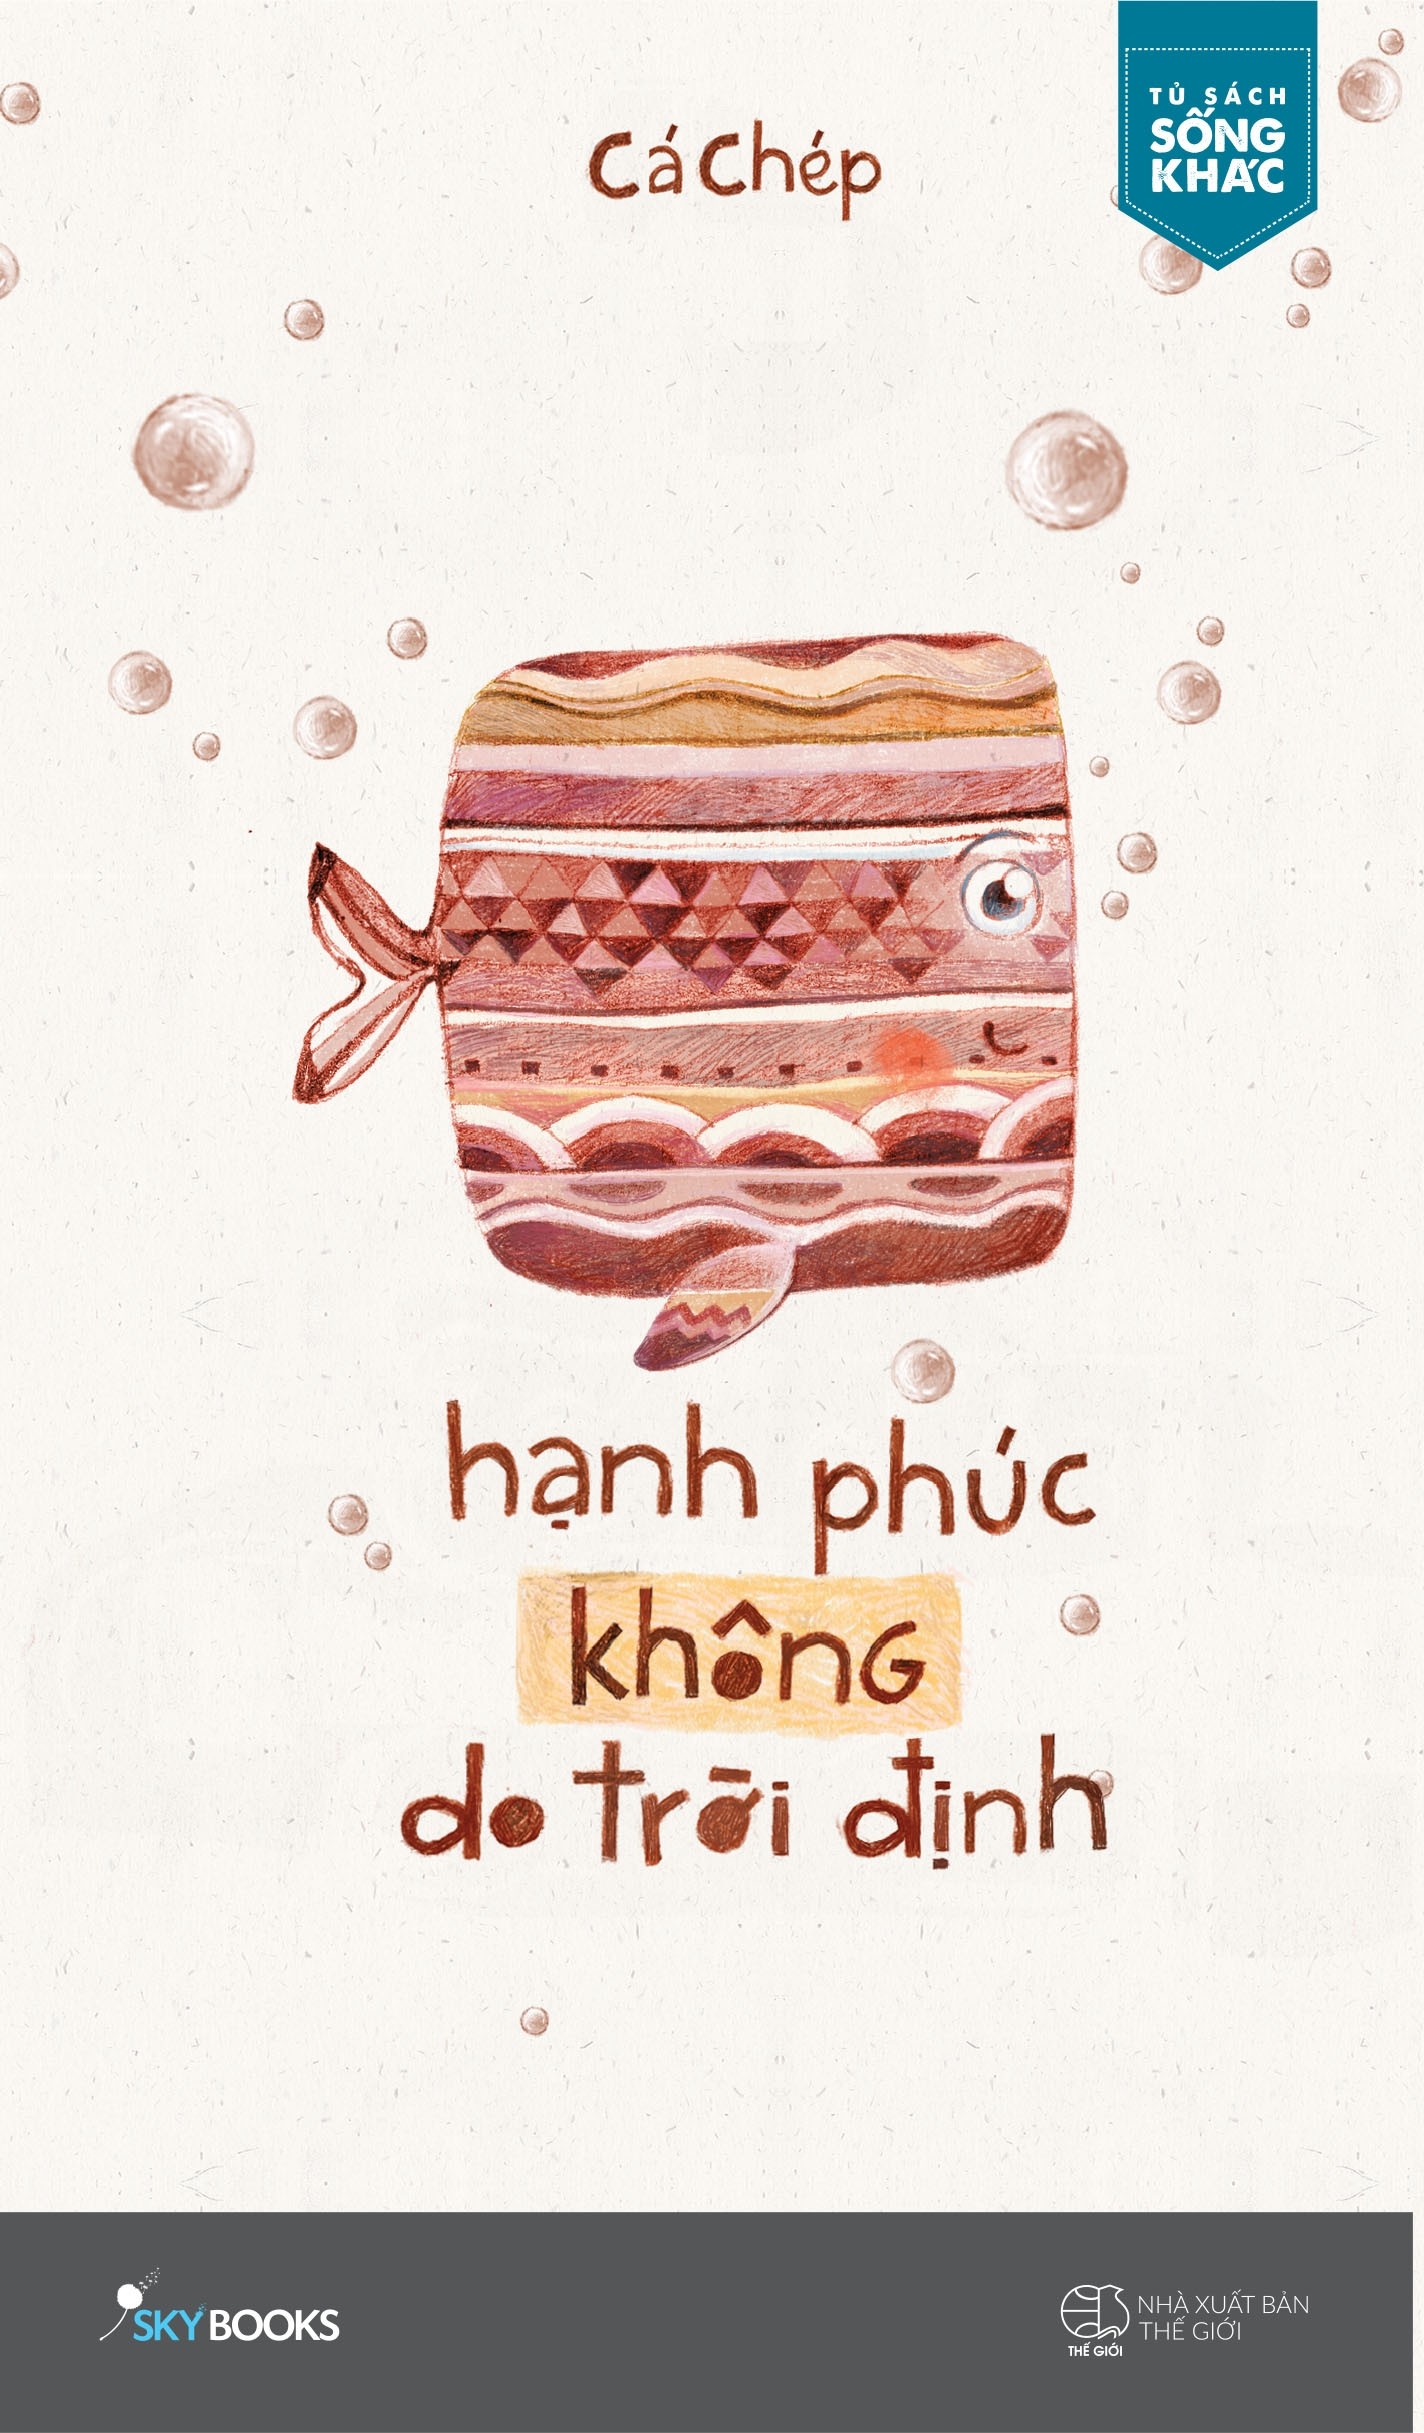 hanh phuc khong do troi dinh